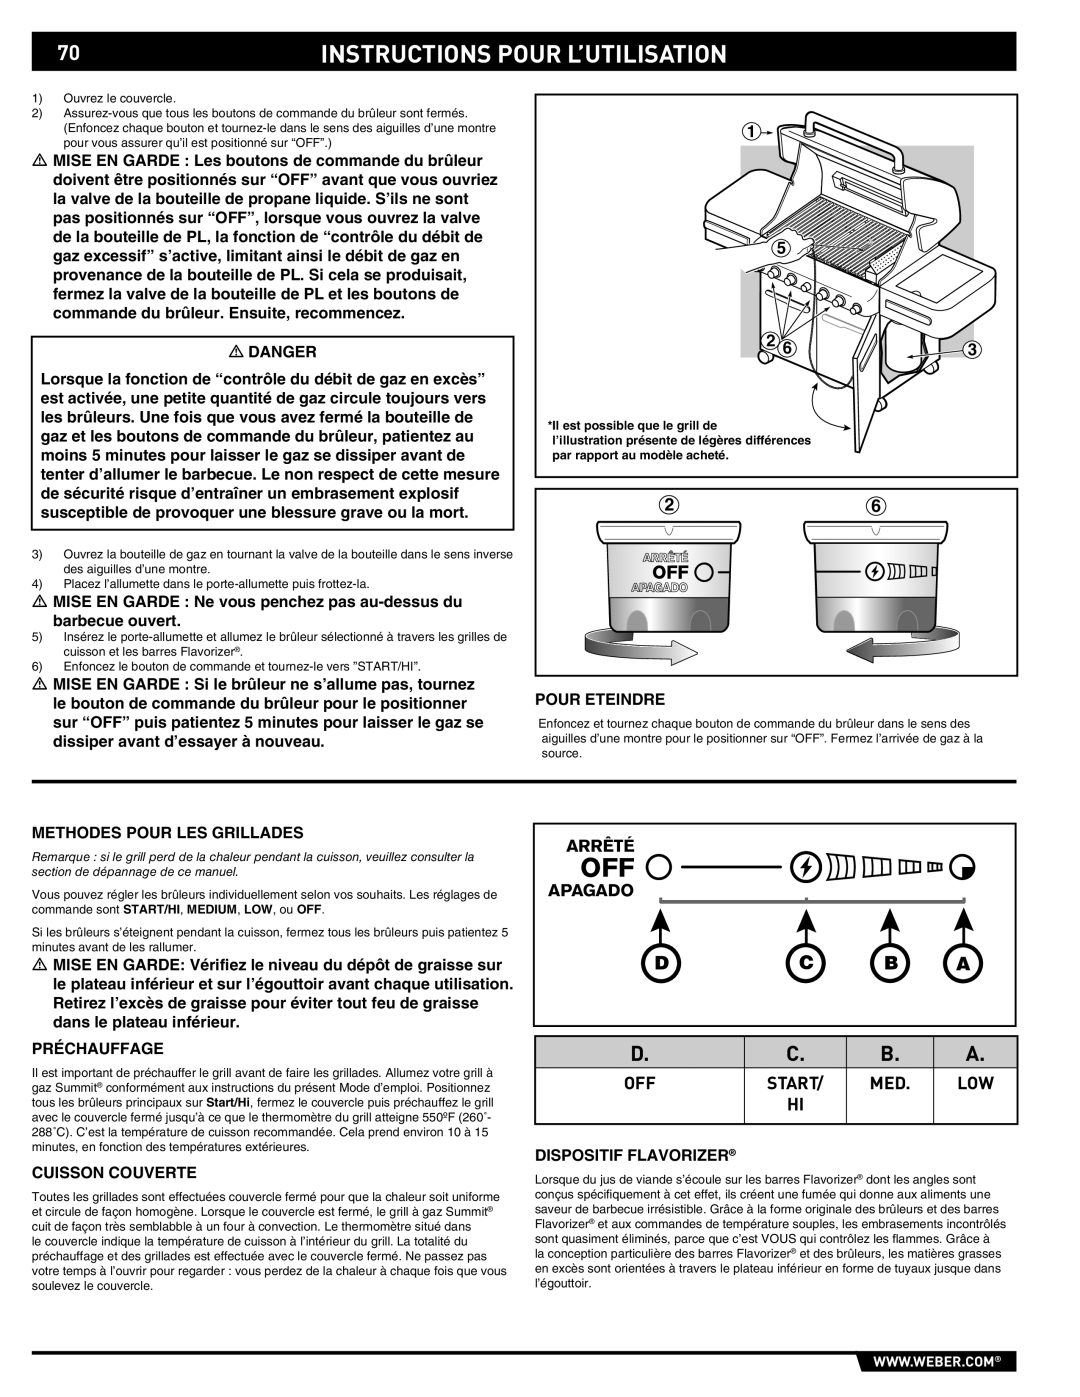 Summit 89190 manual Instructions Pour L’Utilisation, D C B A, Arrêté, Apagado 